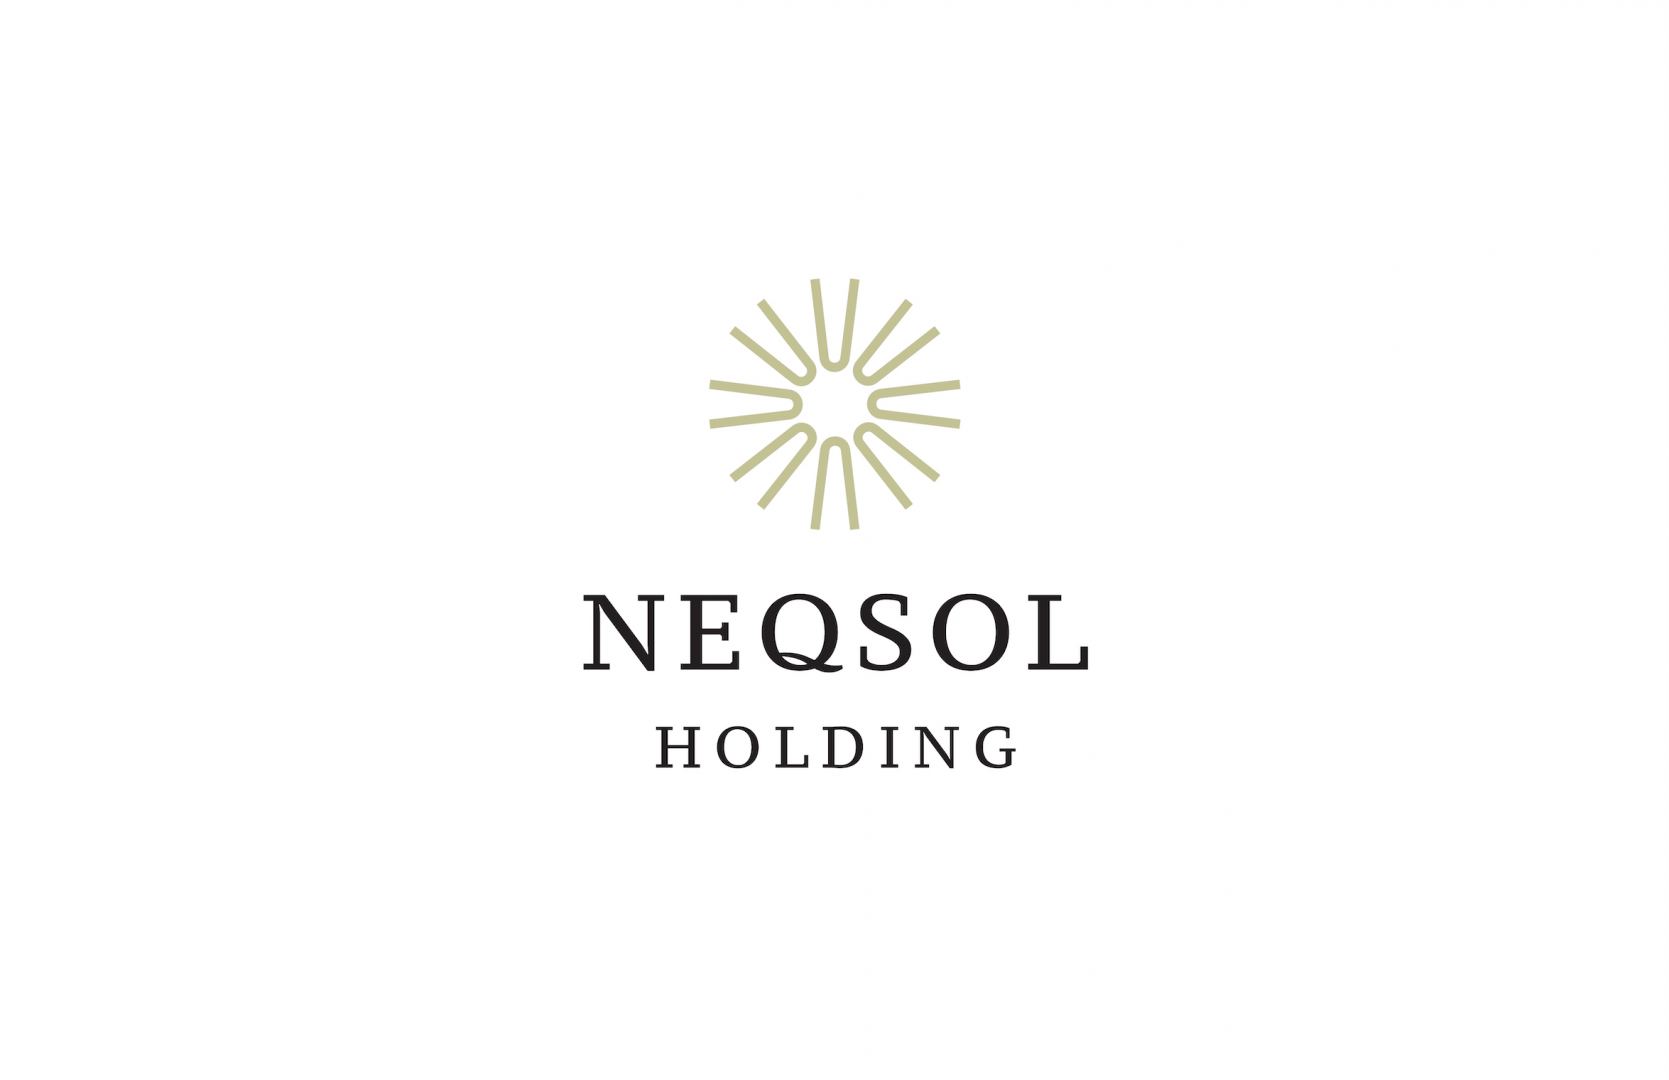 NEQSOL Holding выделил 500 тысяч манат Фонду “YAŞAT”